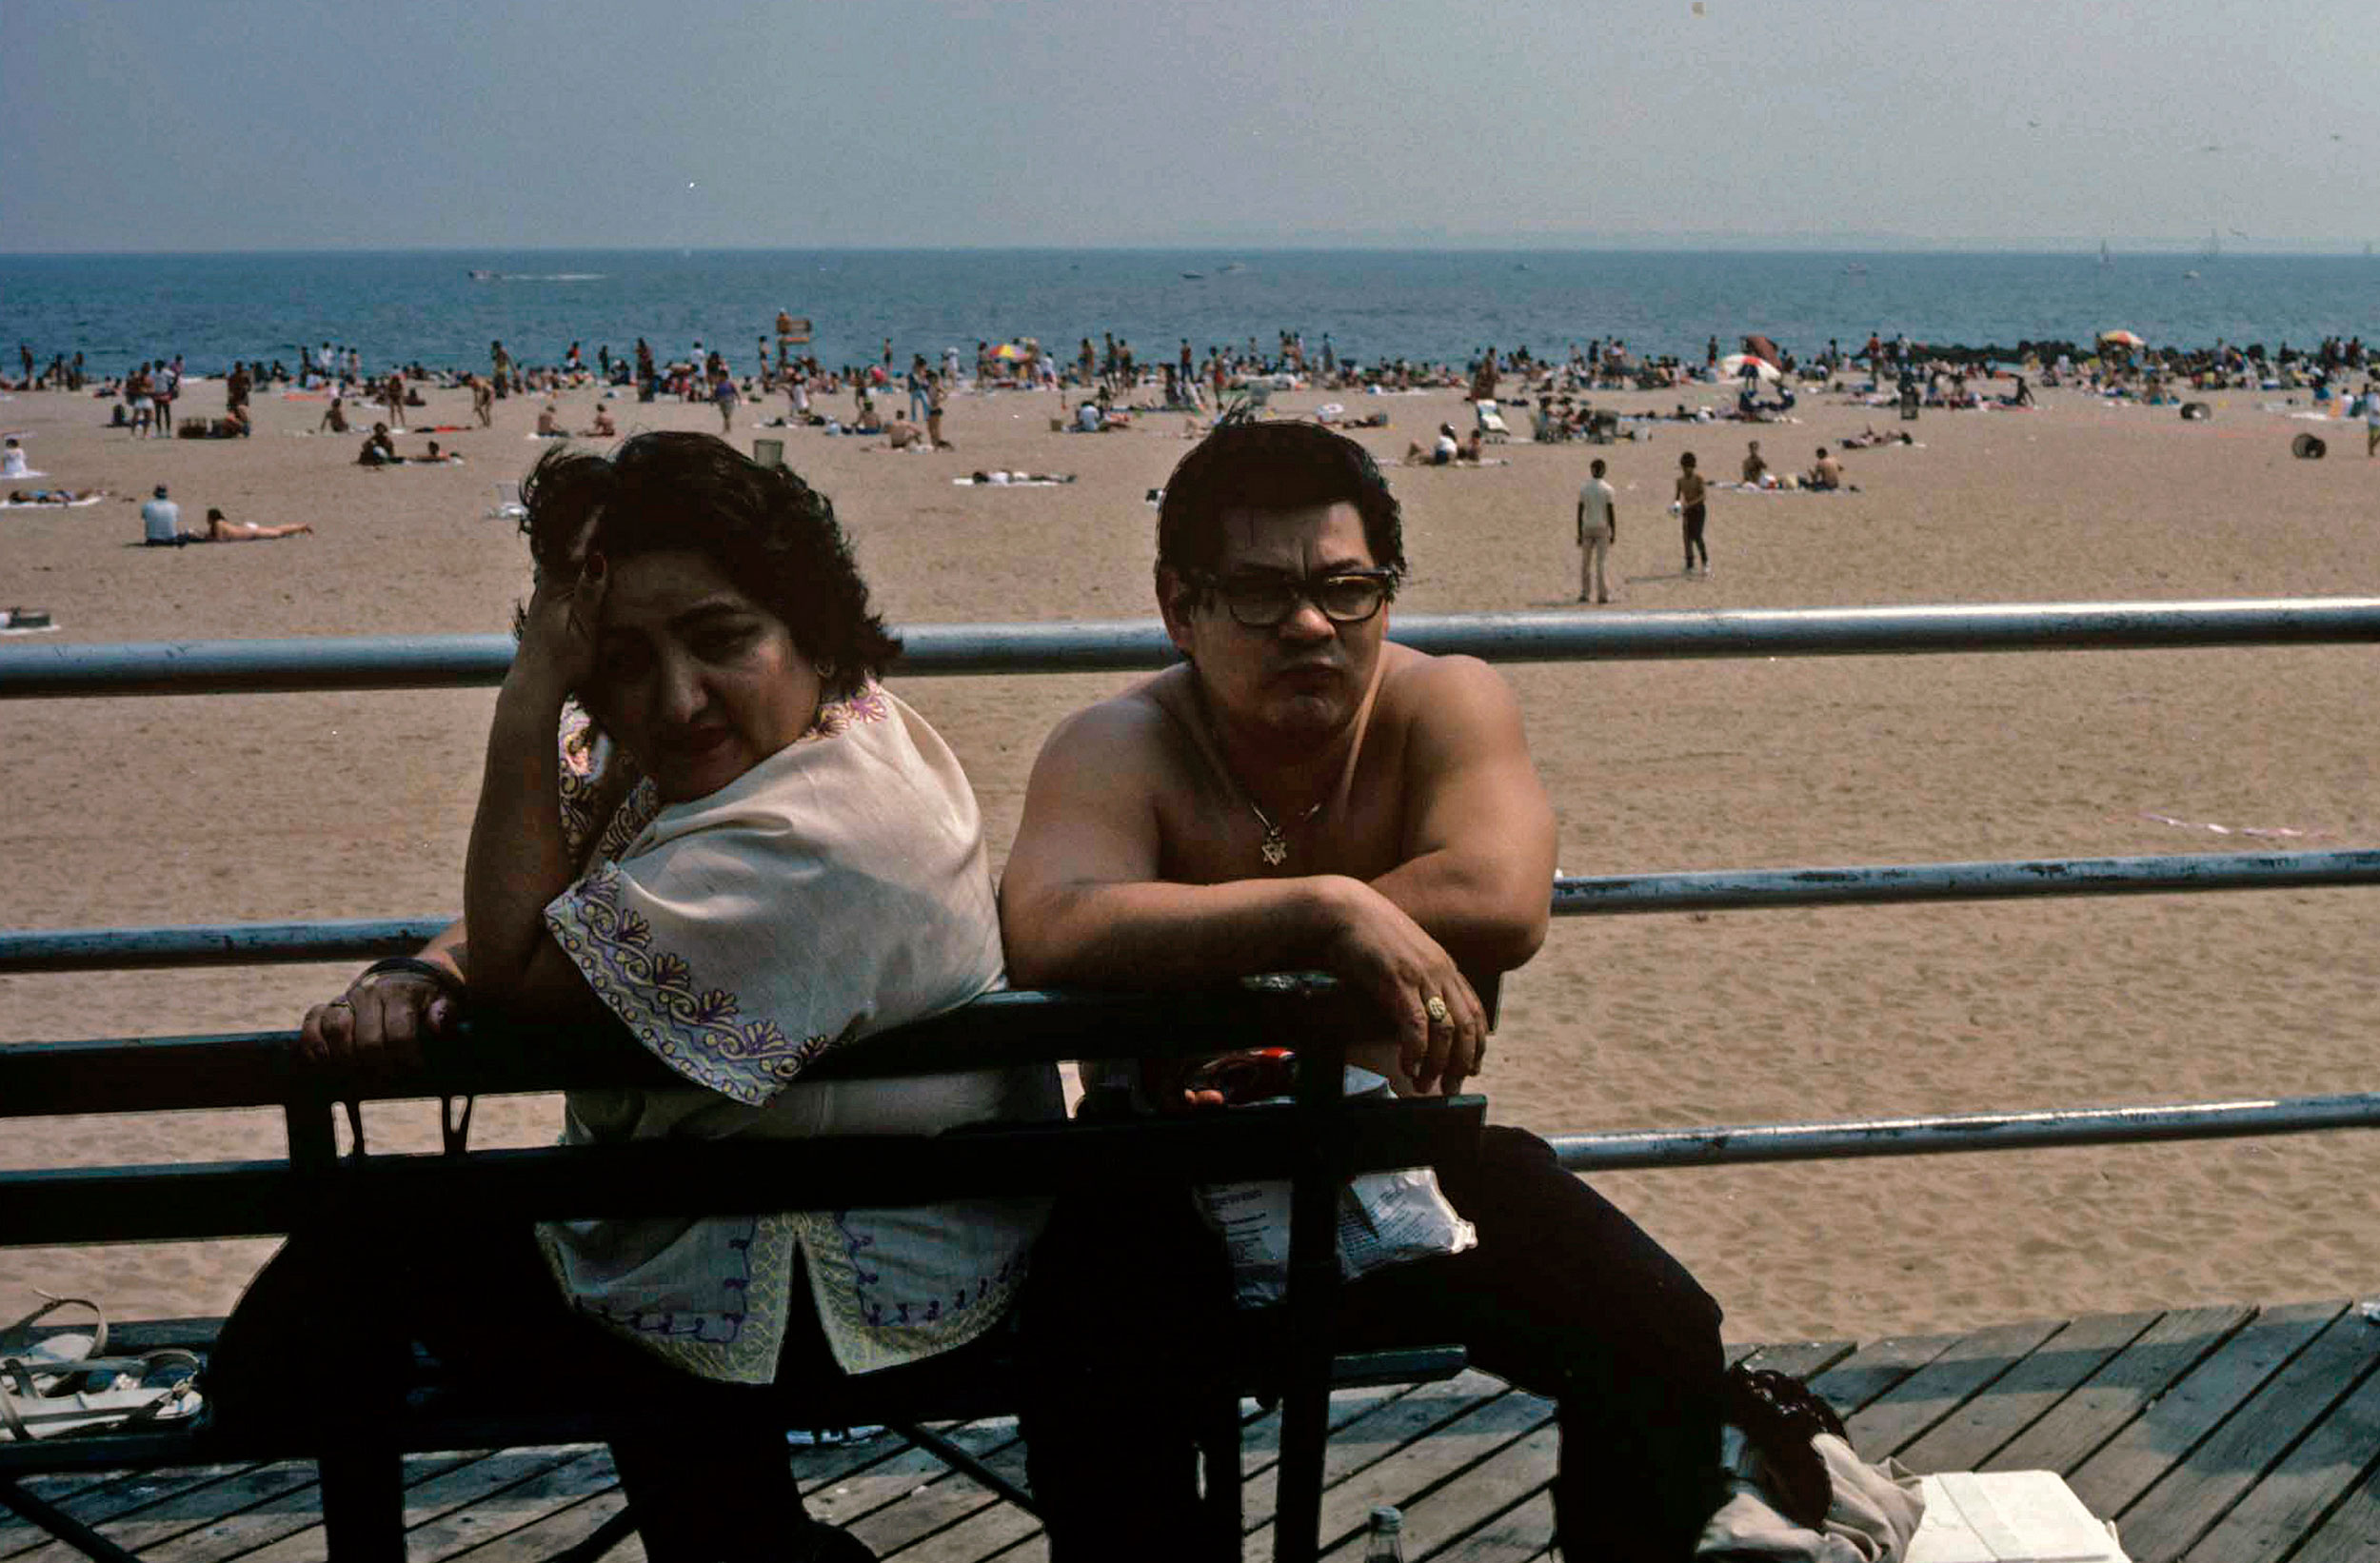 Couple on Bench / Coney Island, NY